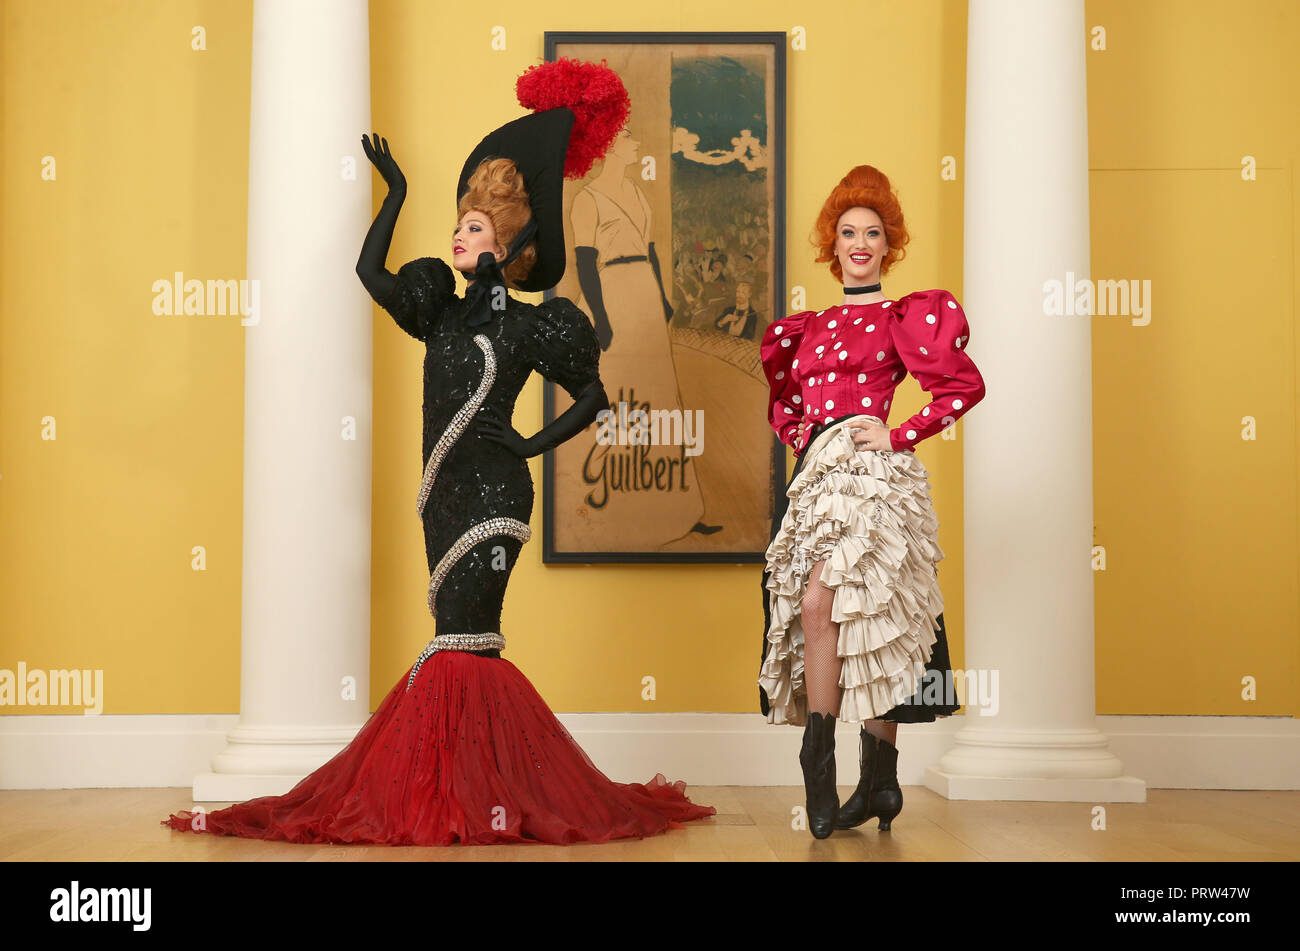 Mathilde Tutiaux (à gauche) et Lucy Monaghan, pouvez-danseurs du Moulin Rouge à Paris, aux côtés d'effectuer une lithographie affiche pour Yvette Guilbert (1894) à l'ouverture de la nouvelle exposition "Pin-Ups : Toulouse-Lautrec et l'Art de la célébrité" à la Royal Scottish Academy à Édimbourg. Banque D'Images